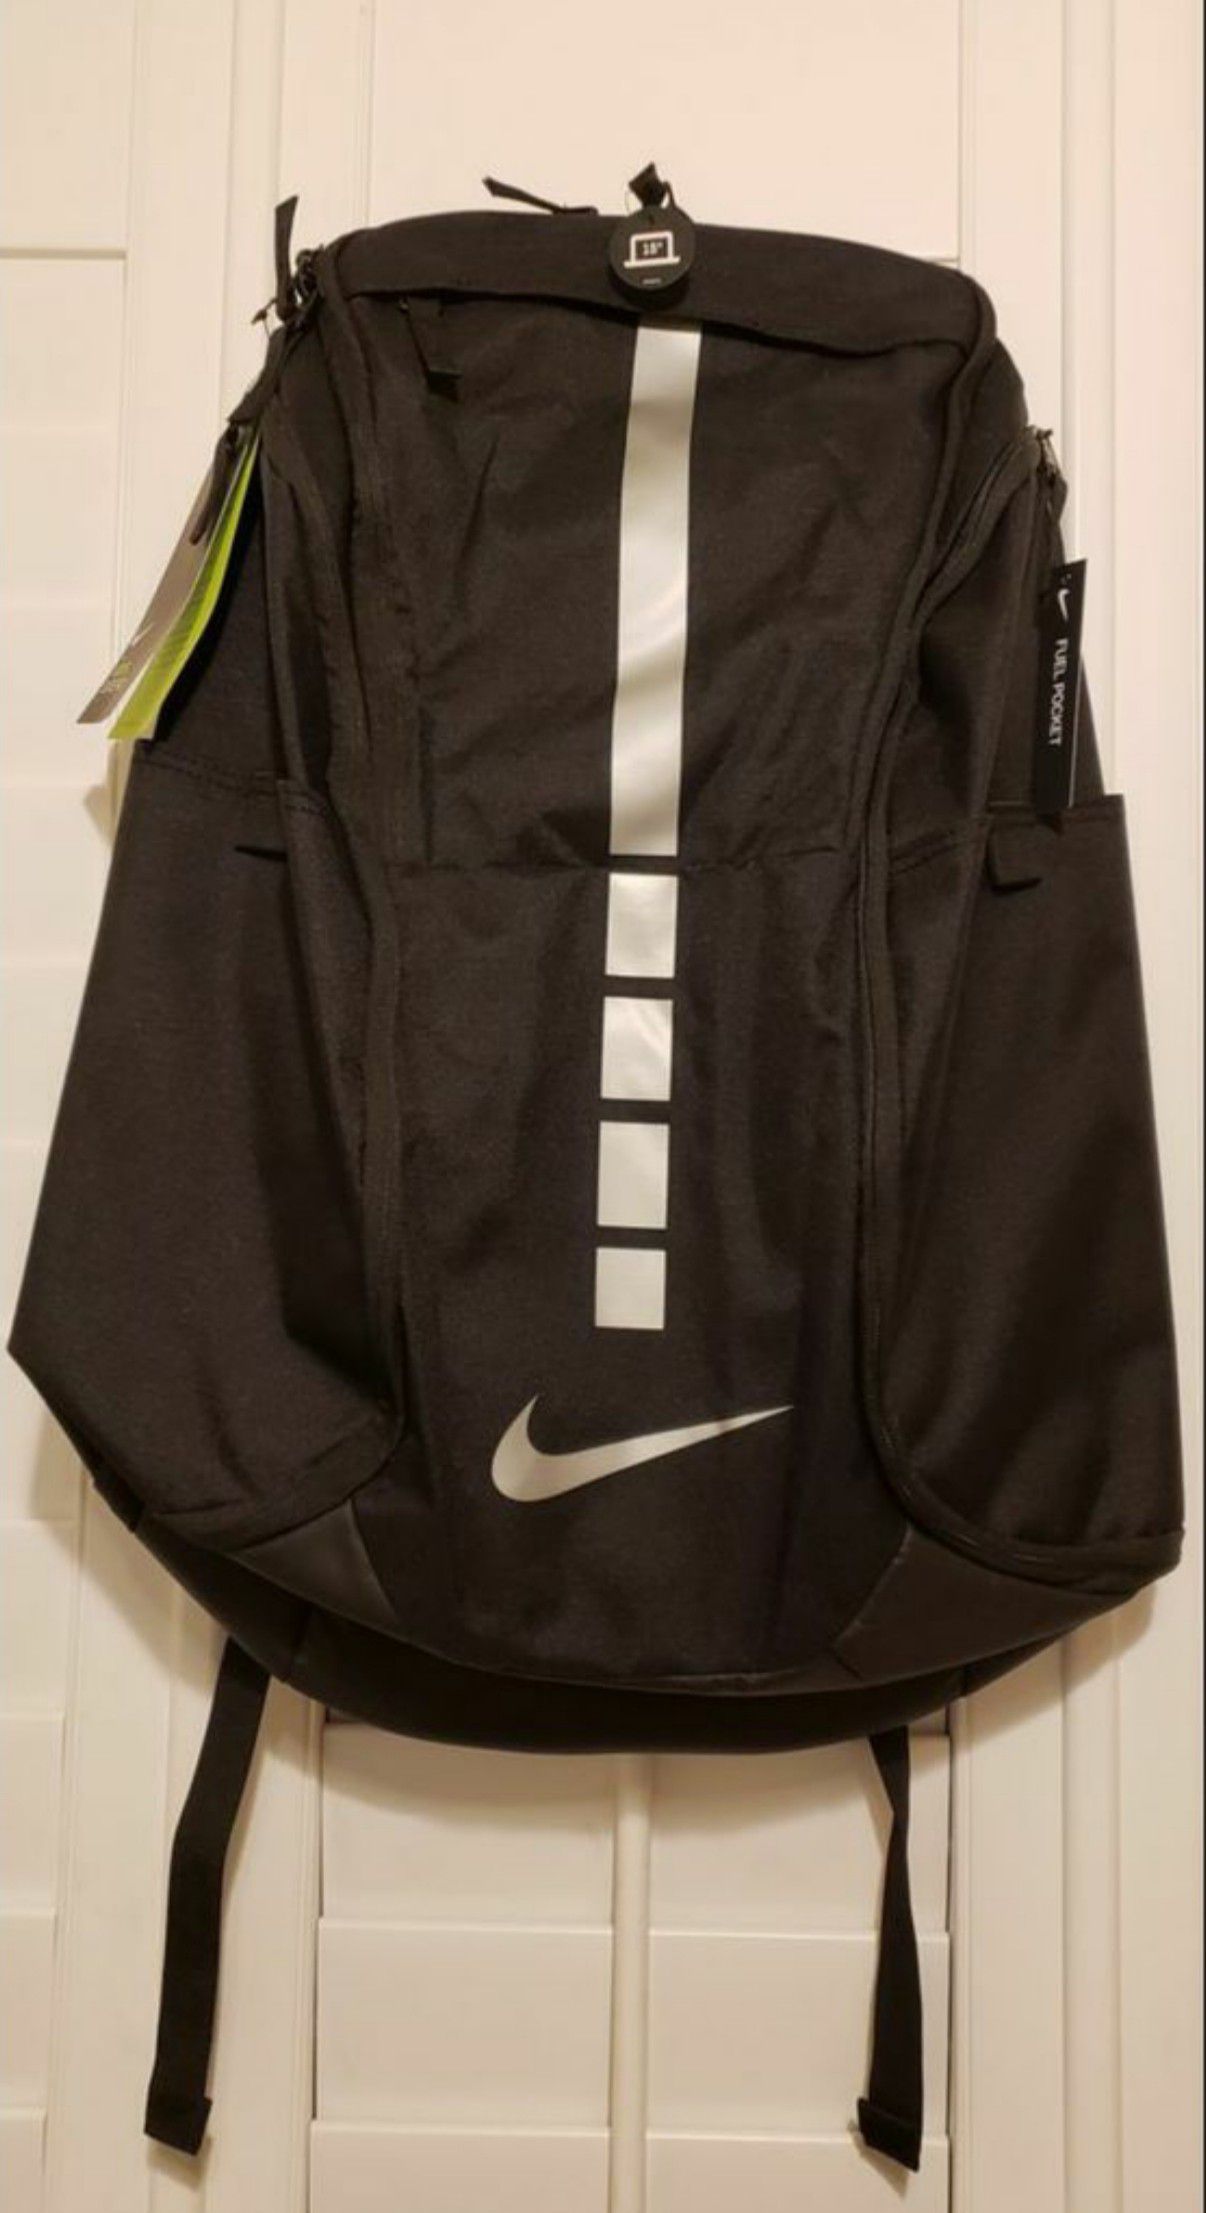 Nike Hoops Elite Pro Backpack